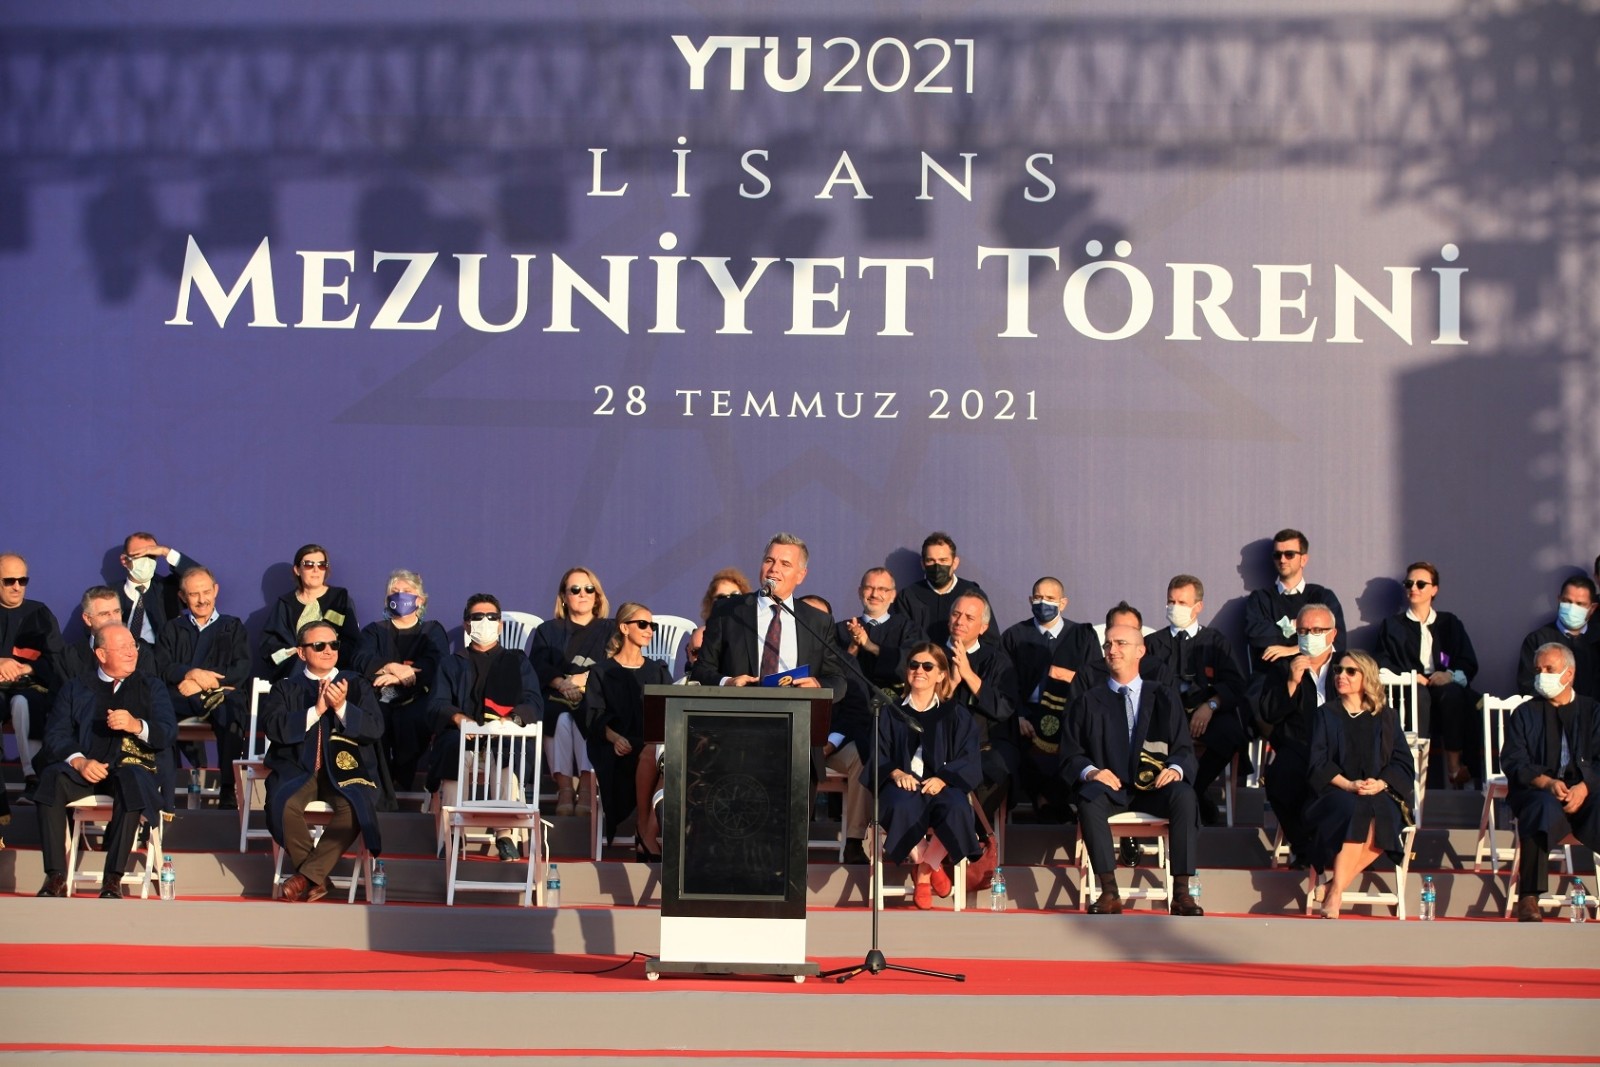 Turkcell GM Erkan, yeni mezunlara seslendi: “Vakit kaybetmeden harekete geçin”